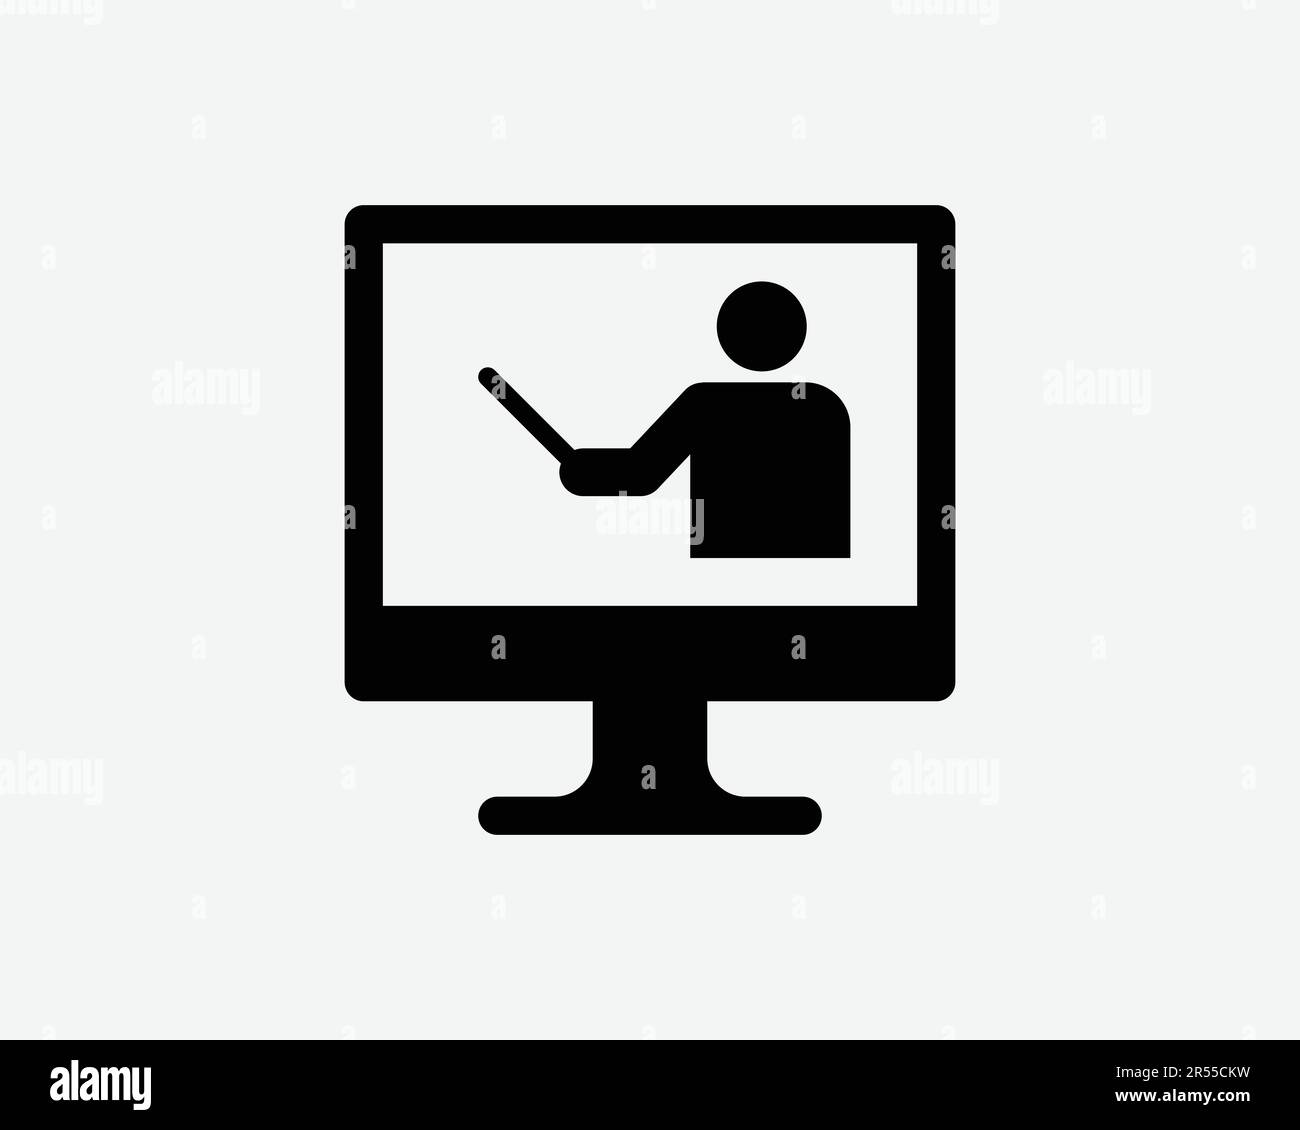 Online Teaching icona Scuola computer Internet Class Seminario corso di formazione in aula Teach Sign Symbol Black Artwork Graphic Illustration Clipart EPS Vector Illustrazione Vettoriale